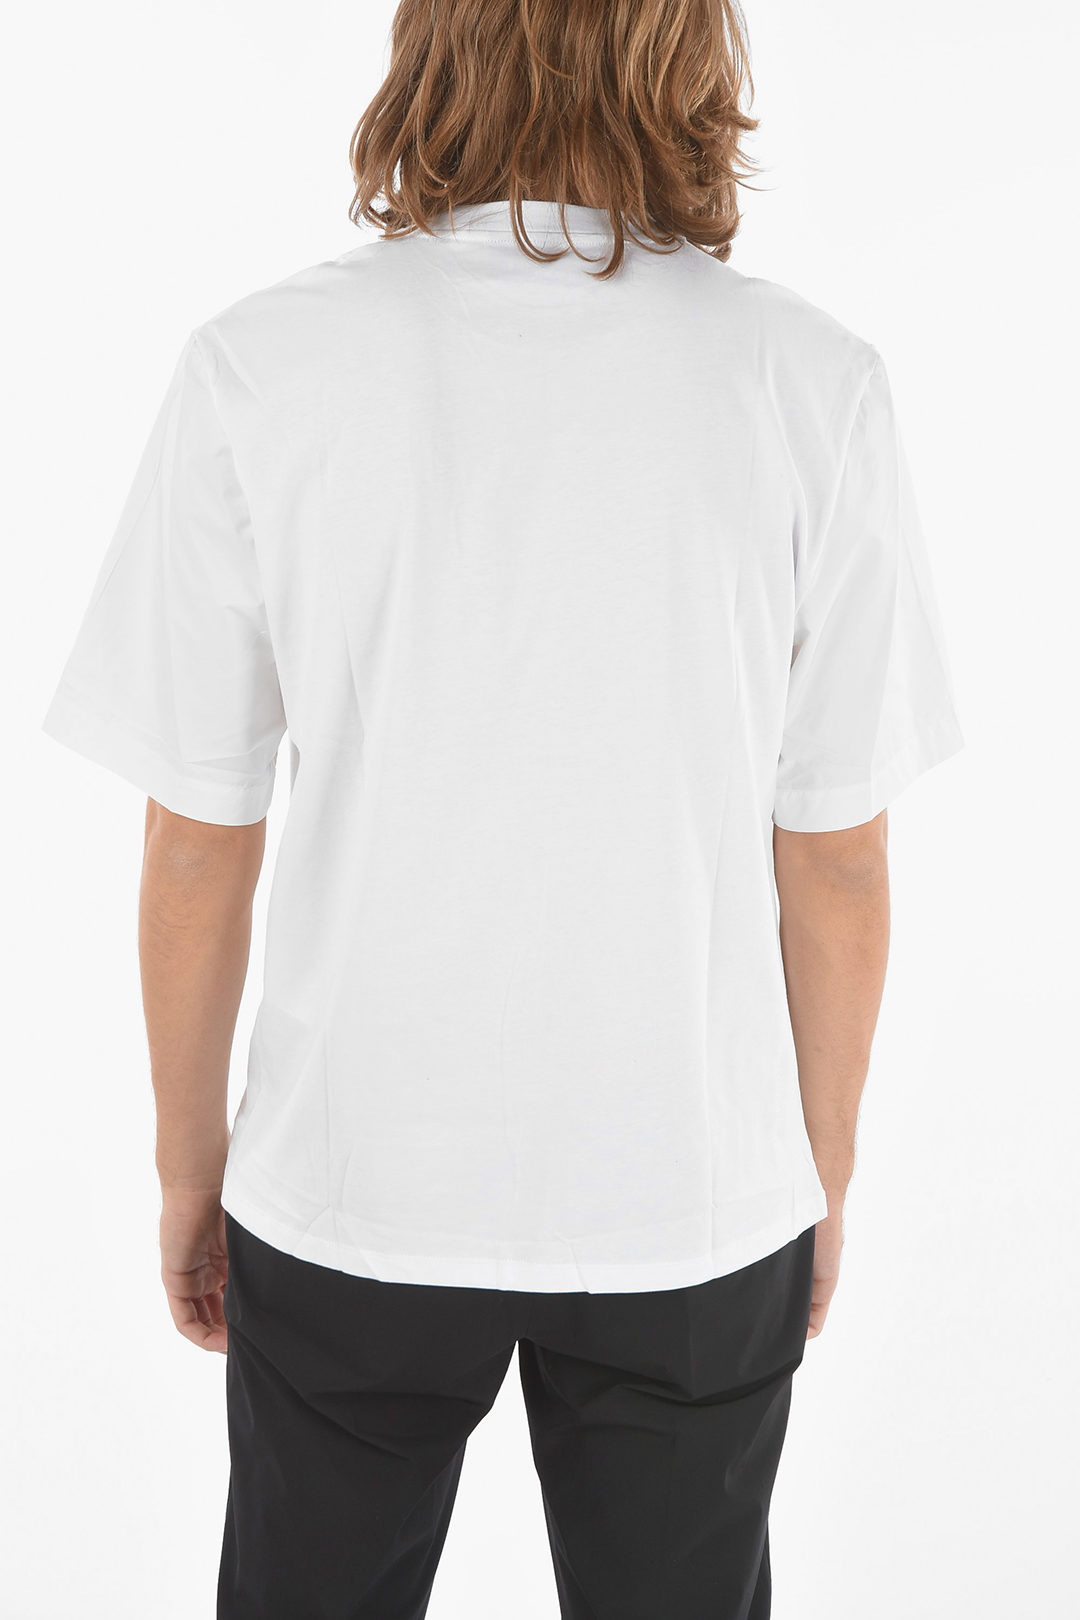 Neil Barrett JAMES HARDEN x NEIL BARRETT Crew Neck Printed Logo T-Shirt men  - Glamood Outlet